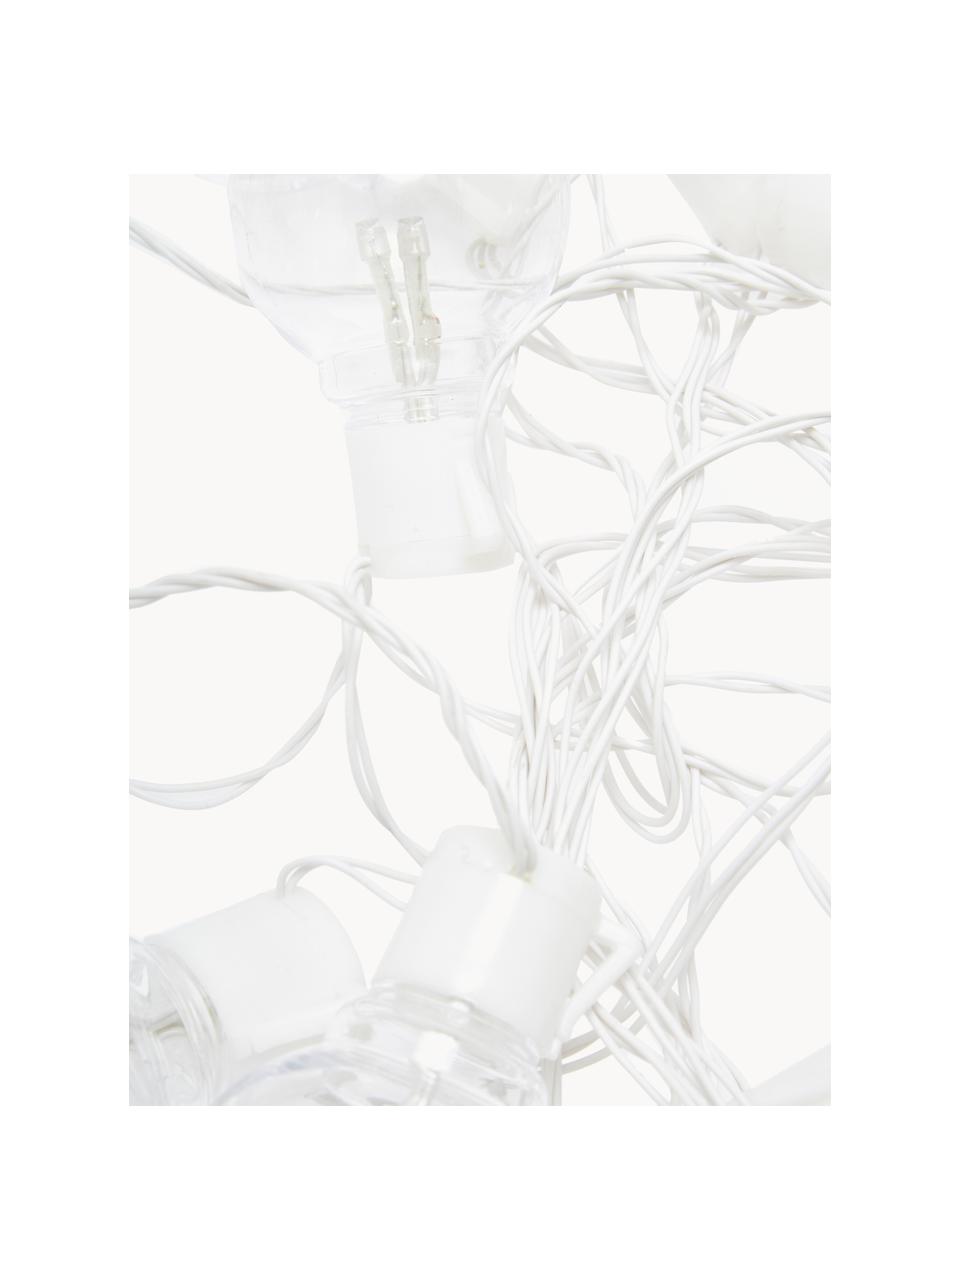 Exteriérový světelný LED řetěz Partaj, 950 cm, Bílá, transparentní, D 950 cm